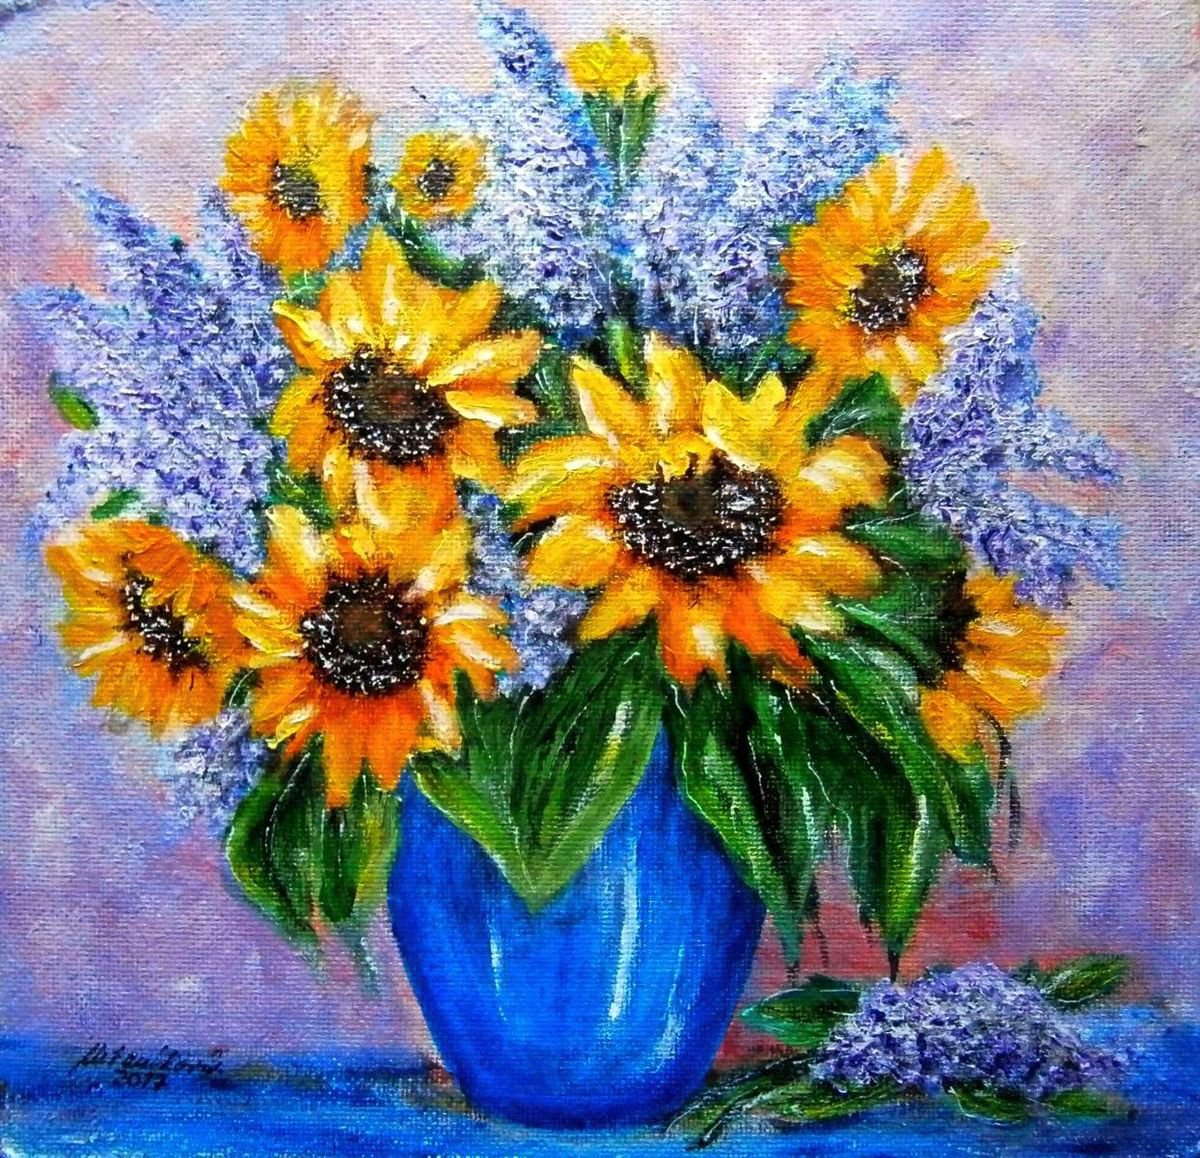 Still life with sunflowers by Emilia Urbanikova